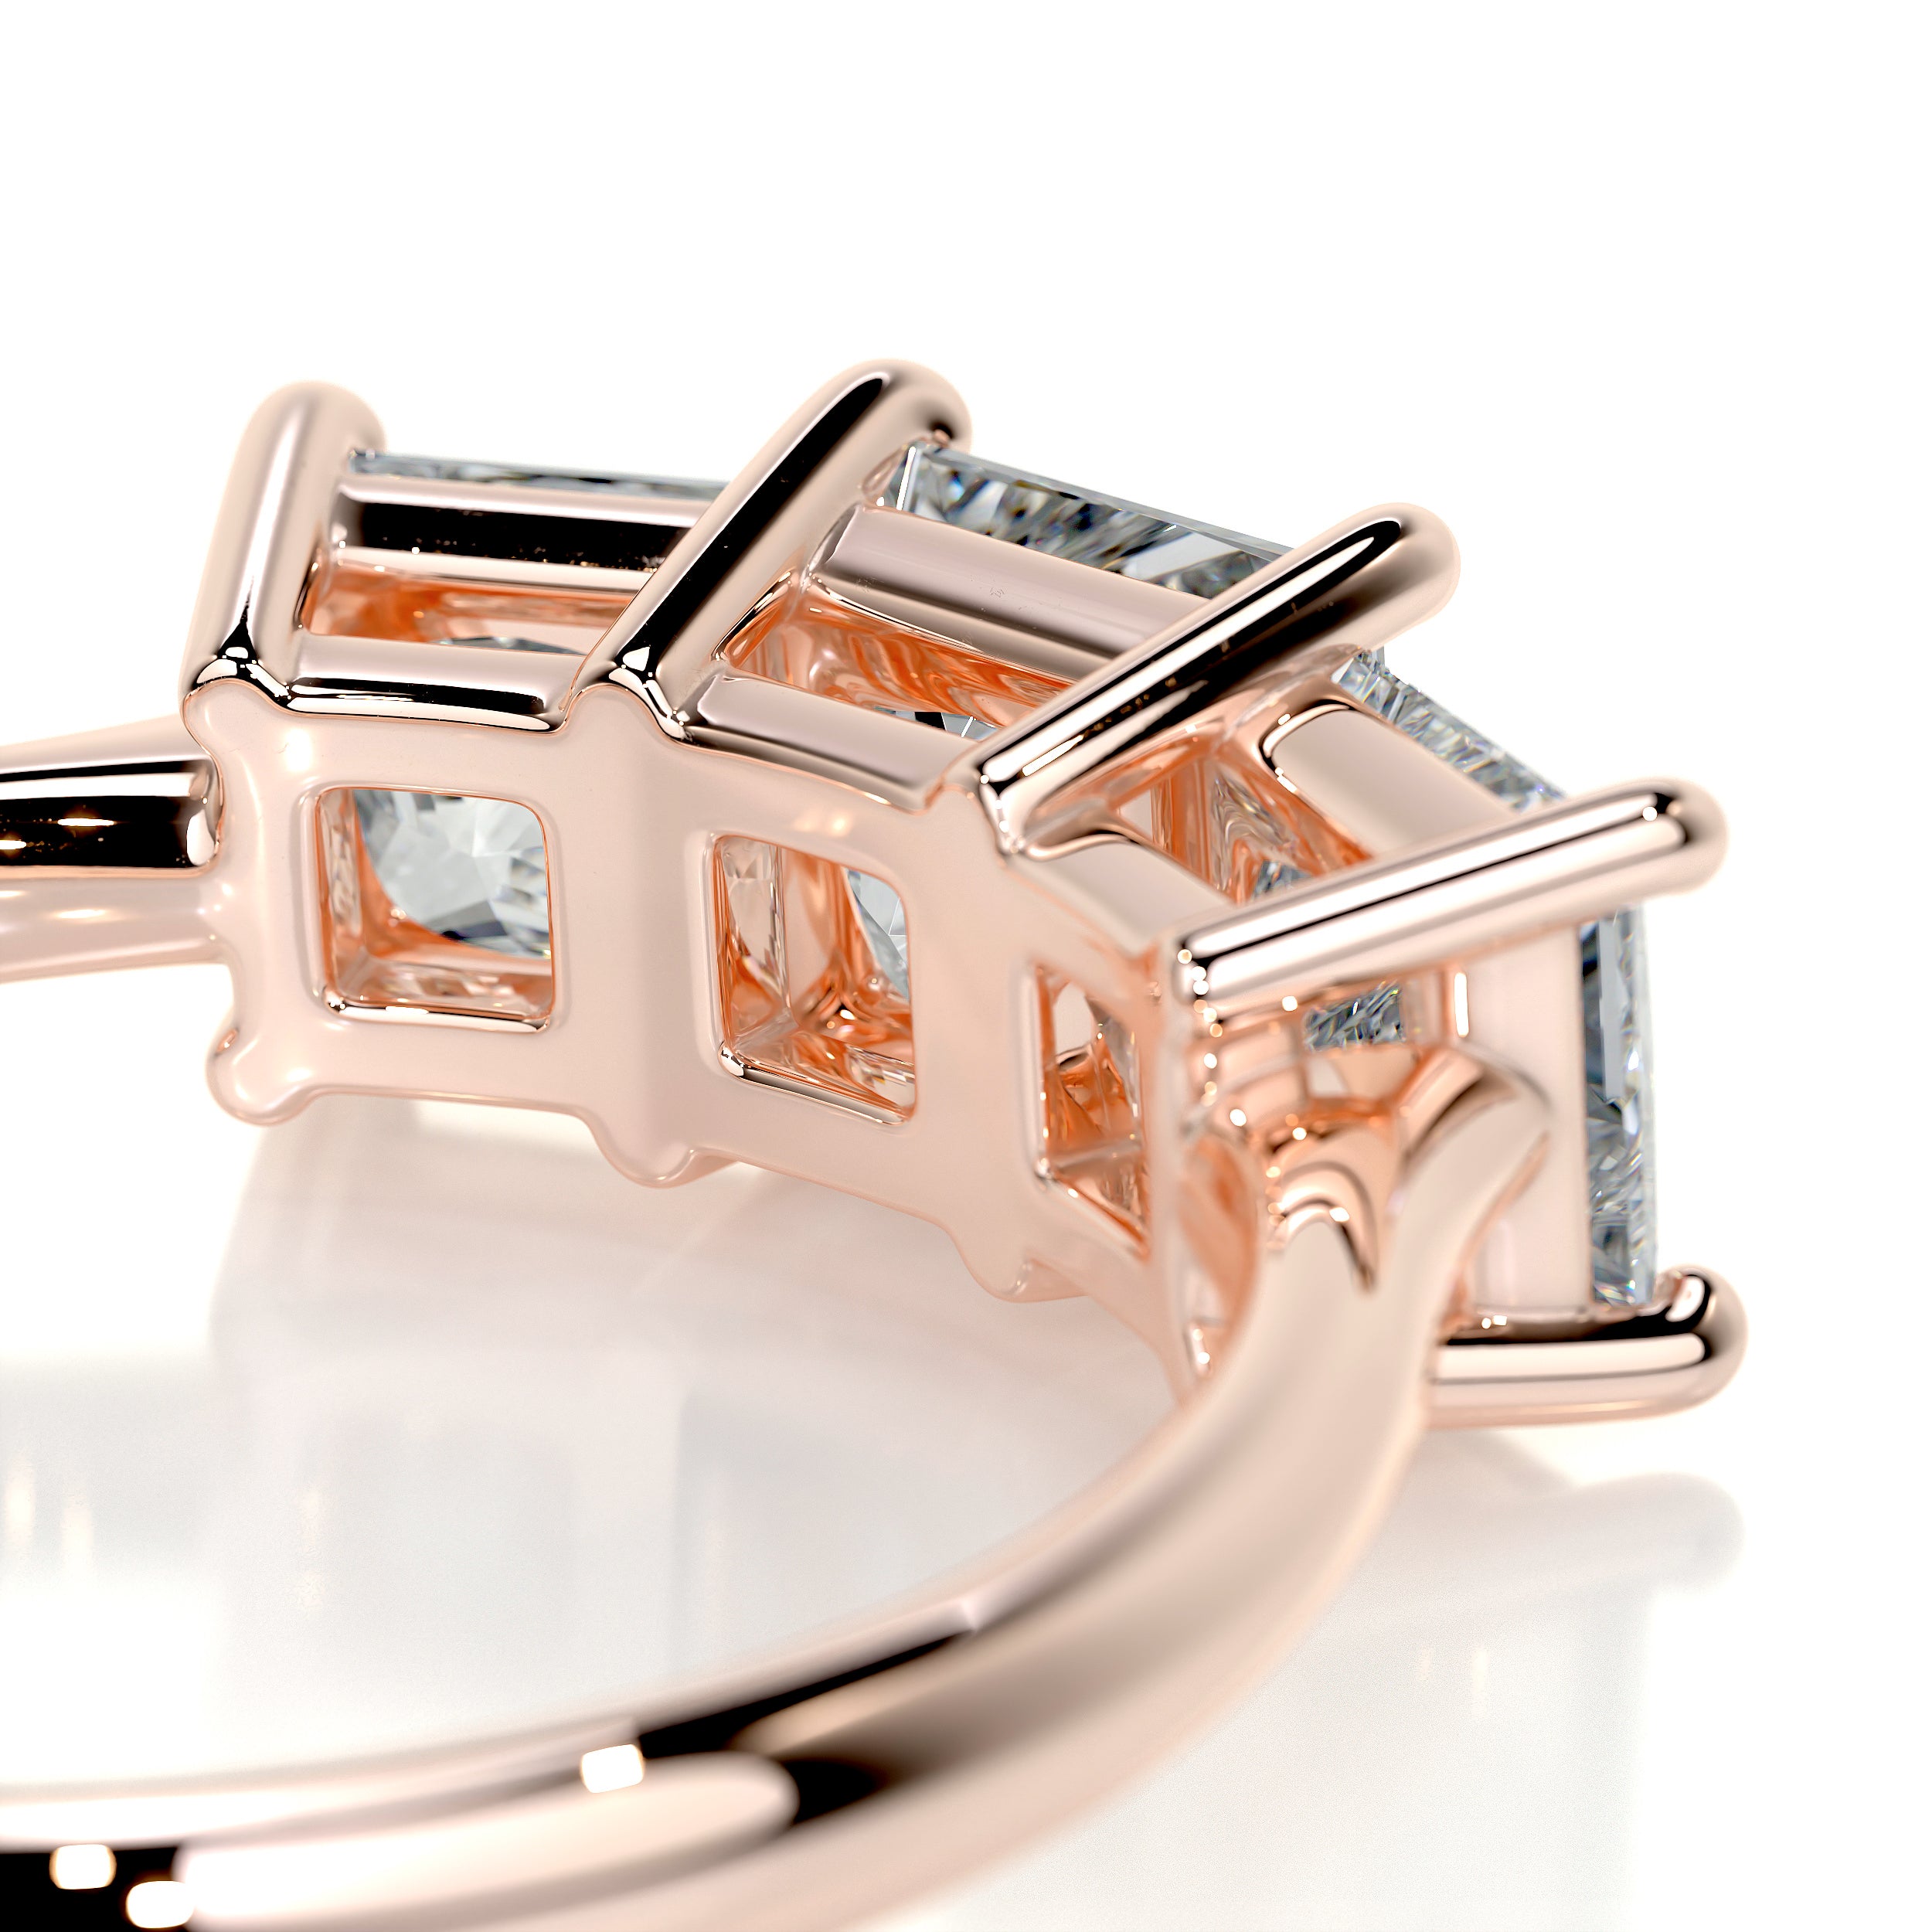 Amanda Diamond Engagement Ring   (3.5 Carat) -14K Rose Gold